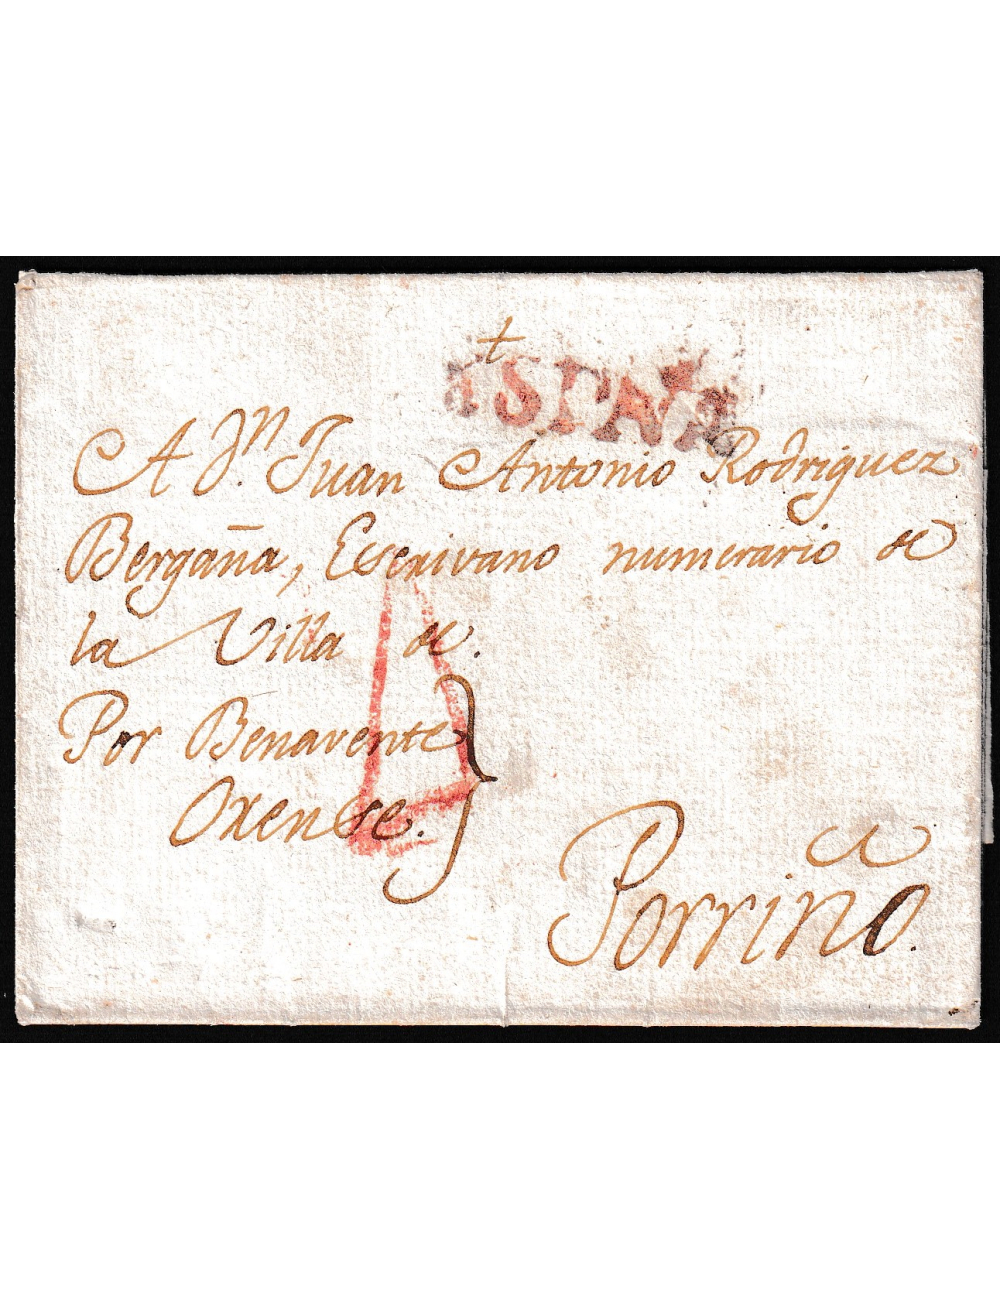 1817 (13 AGO) Madrid (¿?) a Porriño. Sobrescrito con la marca “ESPAÑA” de Coruña incorrectamente estampada, dado que la carta no